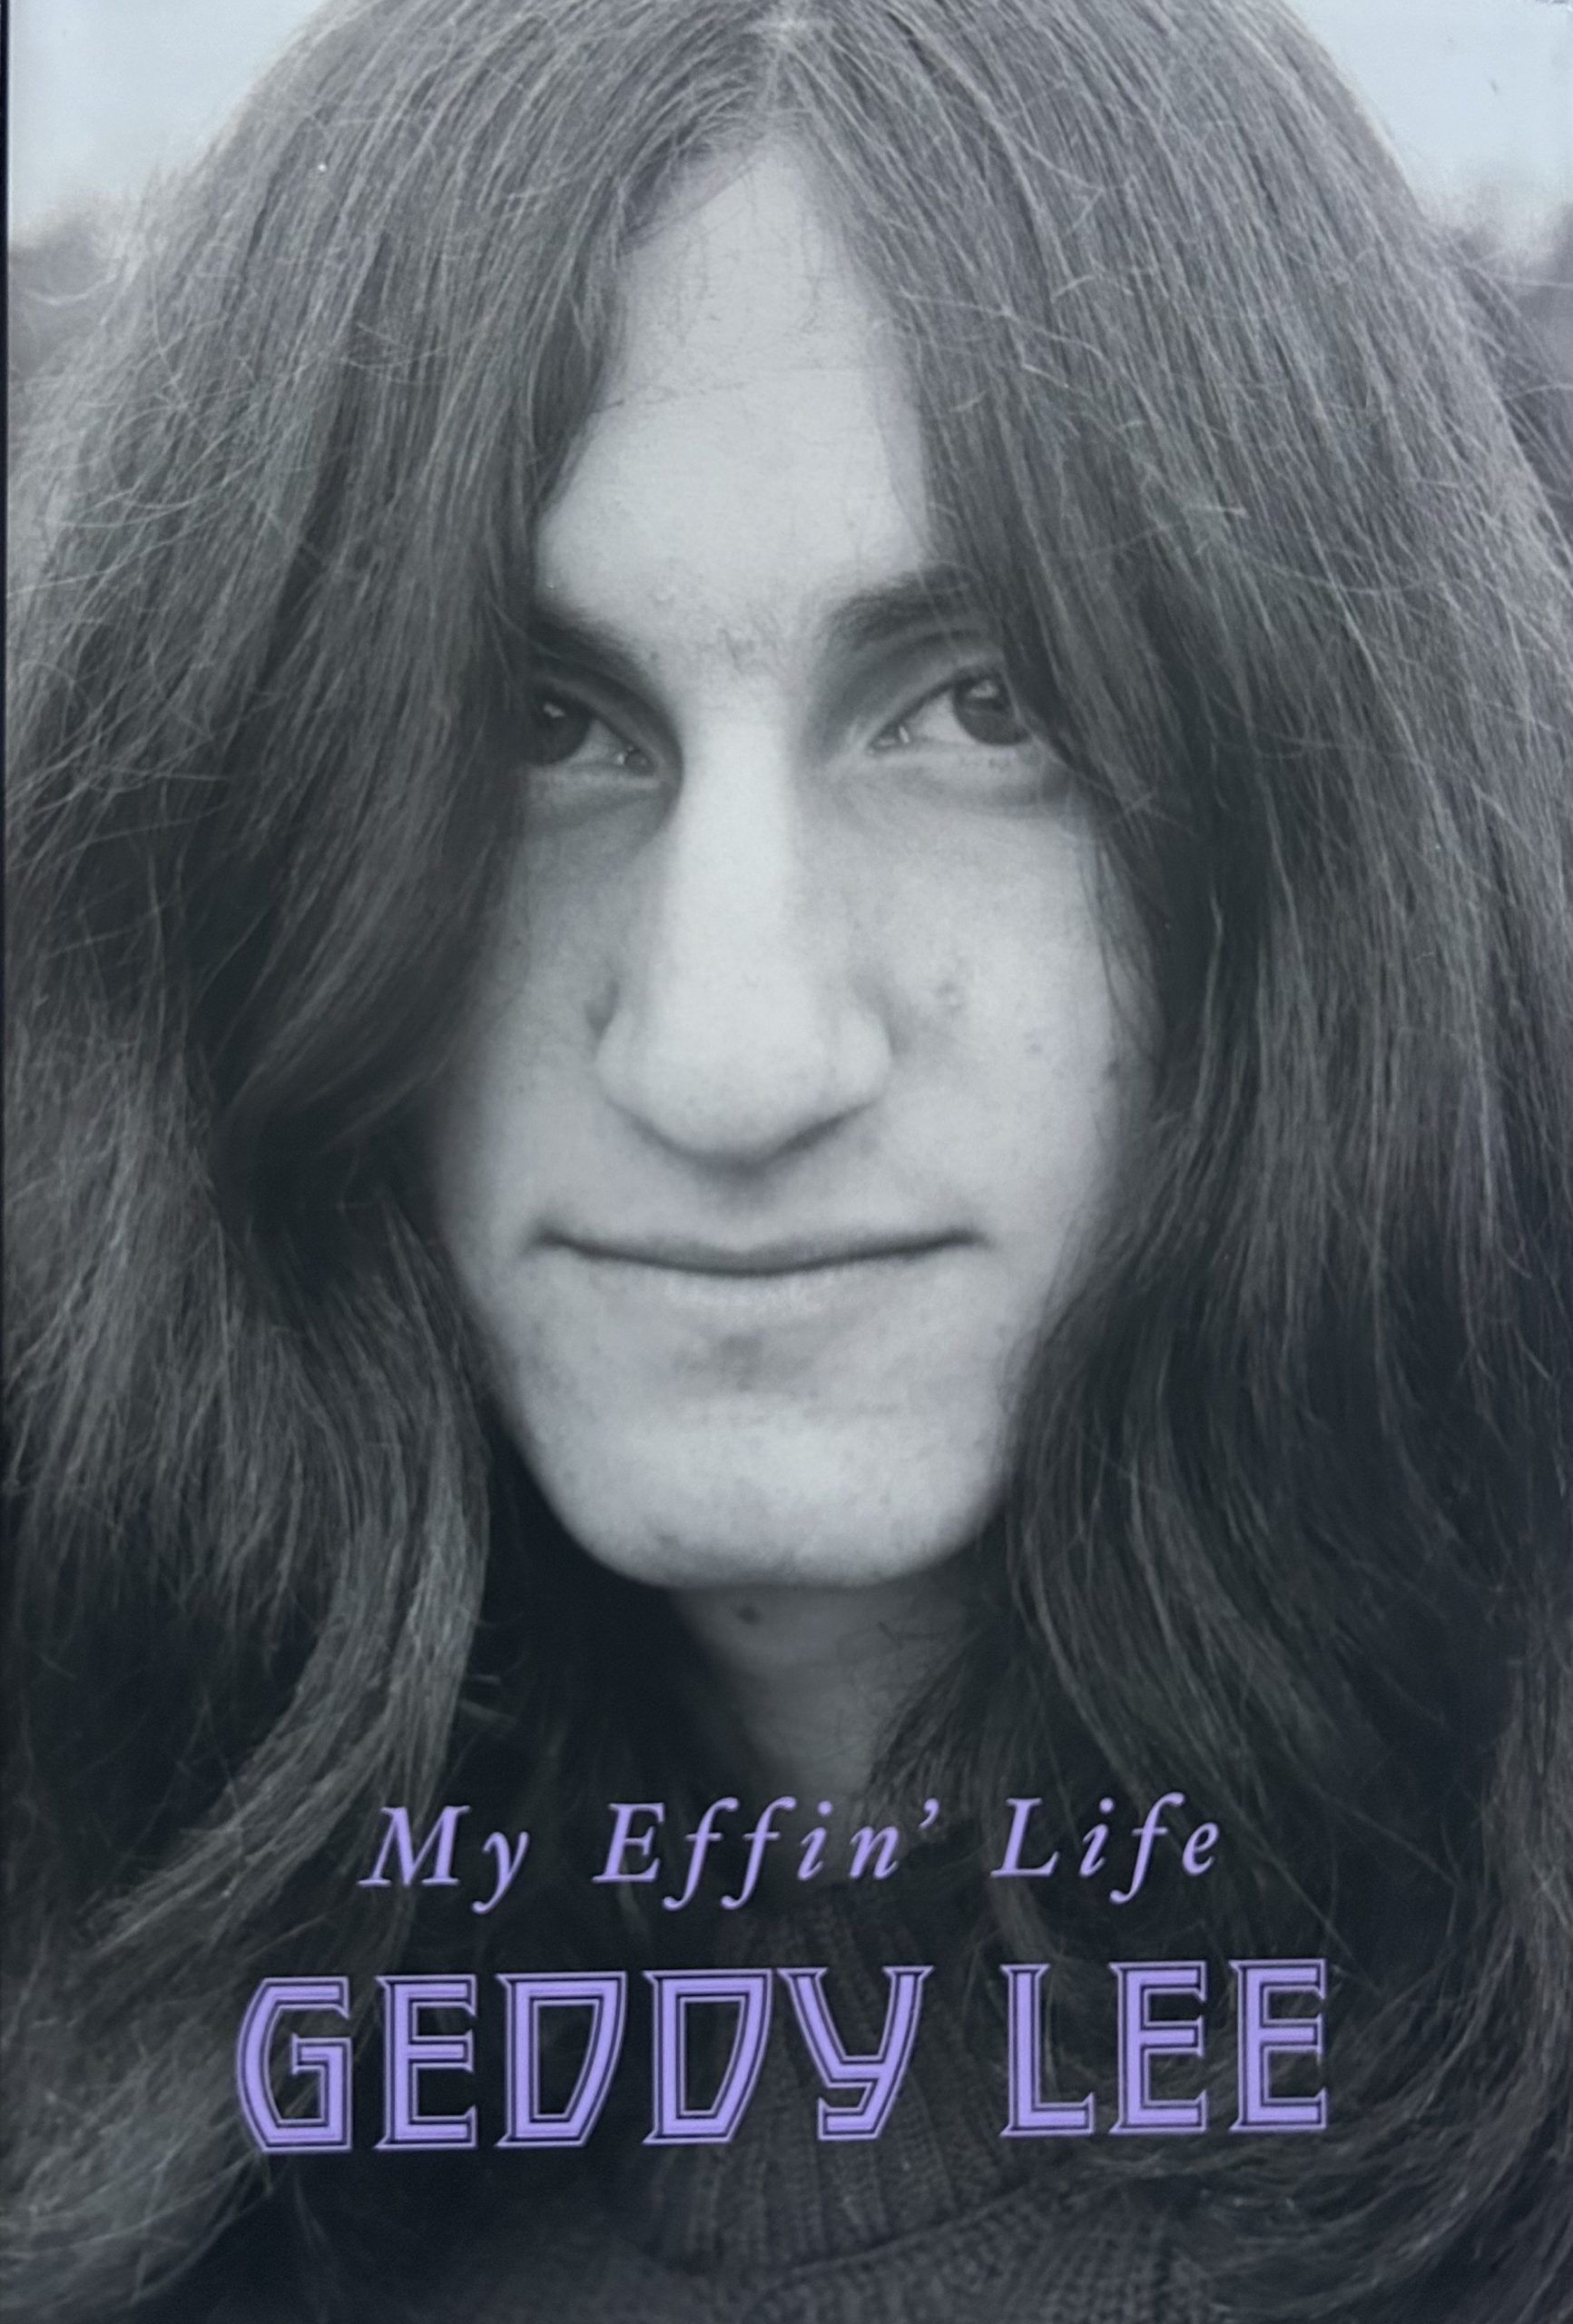 My Effin' Life By Geddy Lee